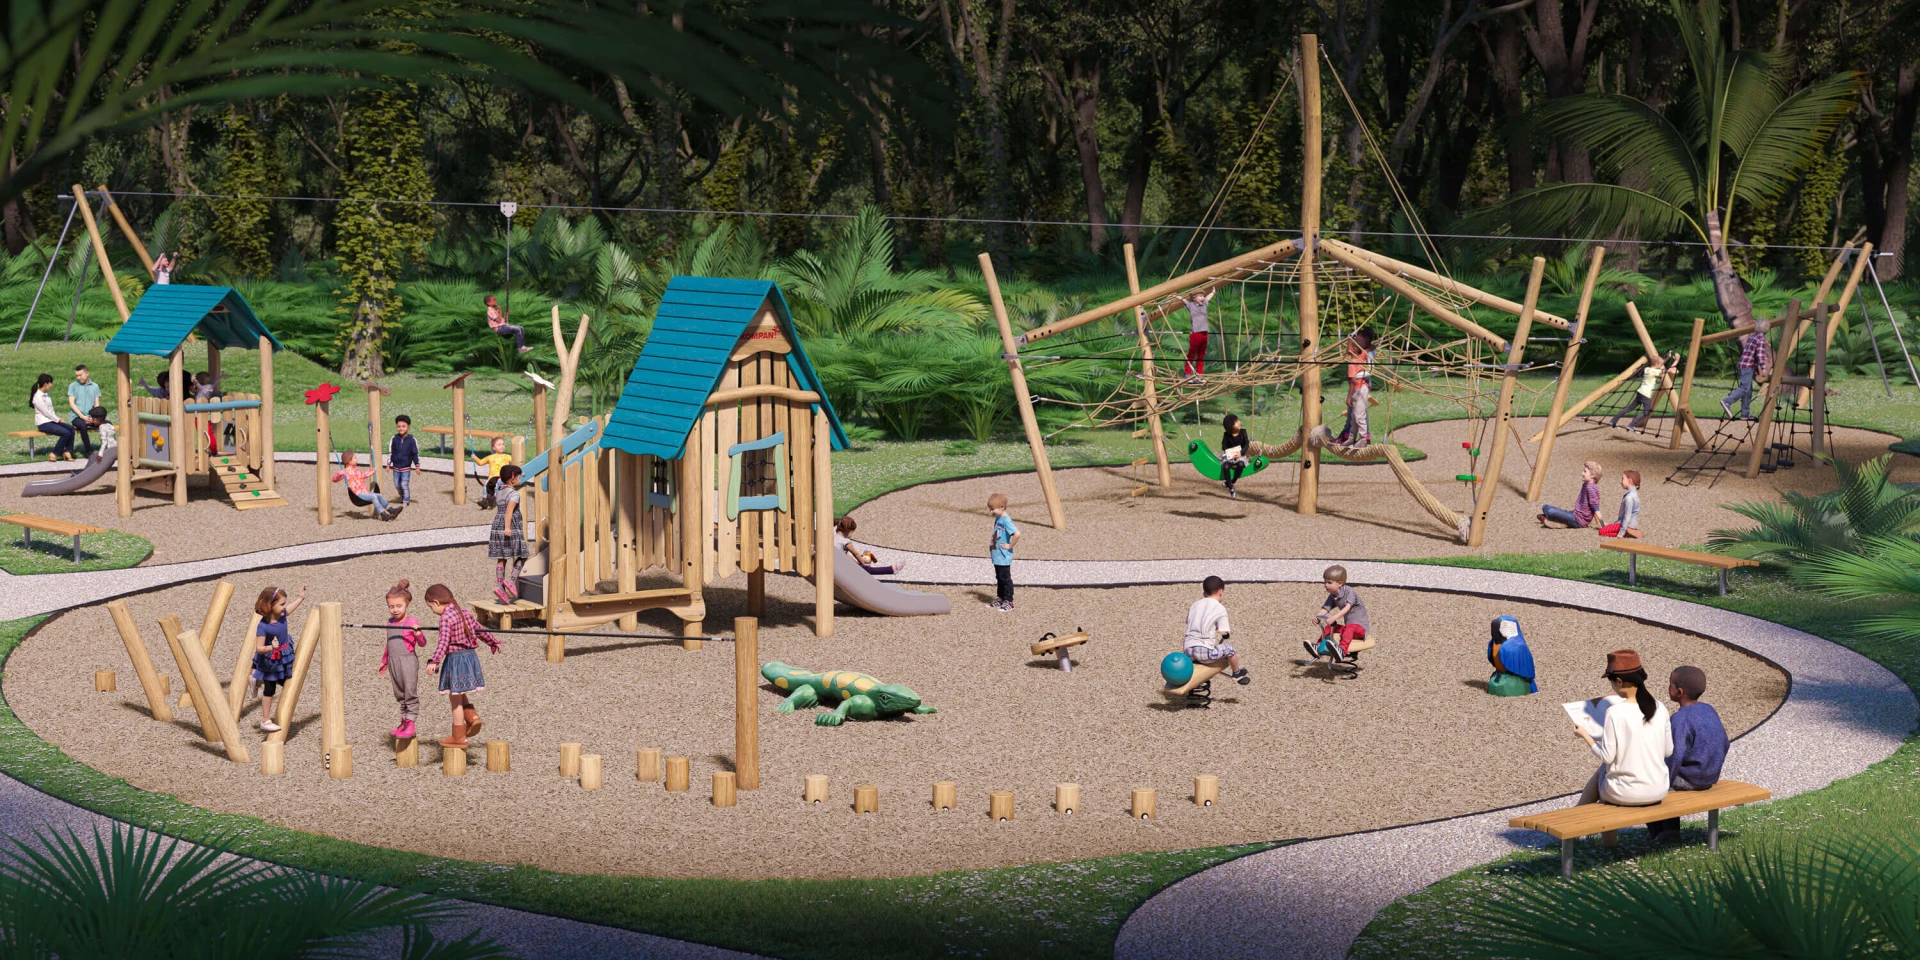 Idée de design d'une aire de jeux en bois dans un parc